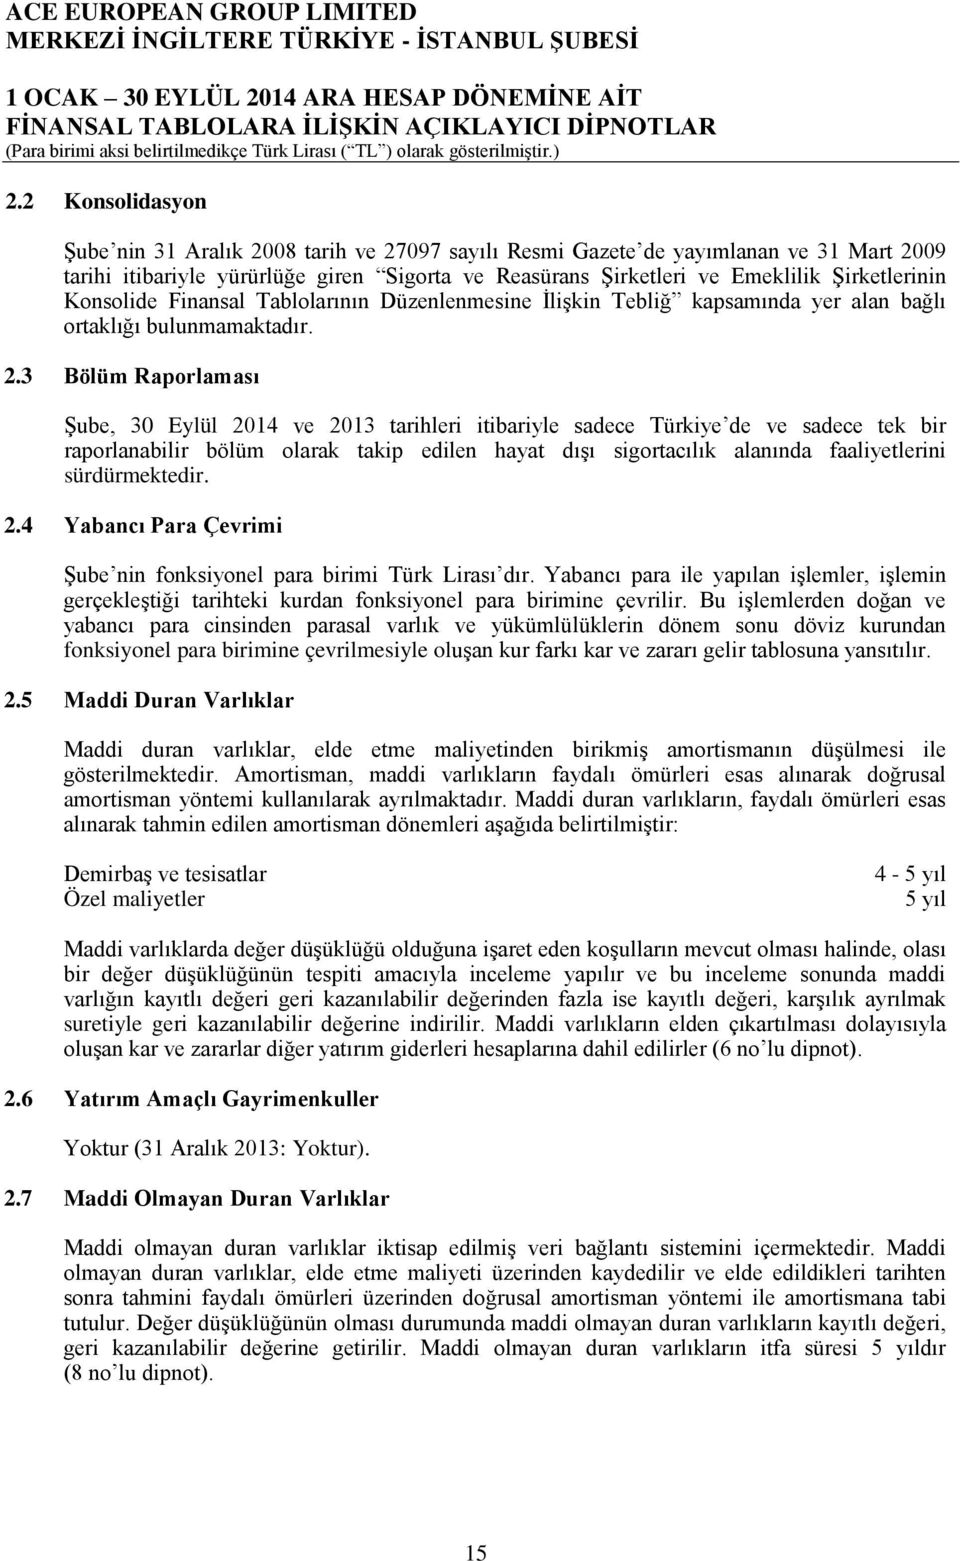 3 Bölüm Raporlaması Şube, 30 Eylül 2014 ve 2013 tarihleri itibariyle sadece Türkiye de ve sadece tek bir raporlanabilir bölüm olarak takip edilen hayat dışı sigortacılık alanında faaliyetlerini